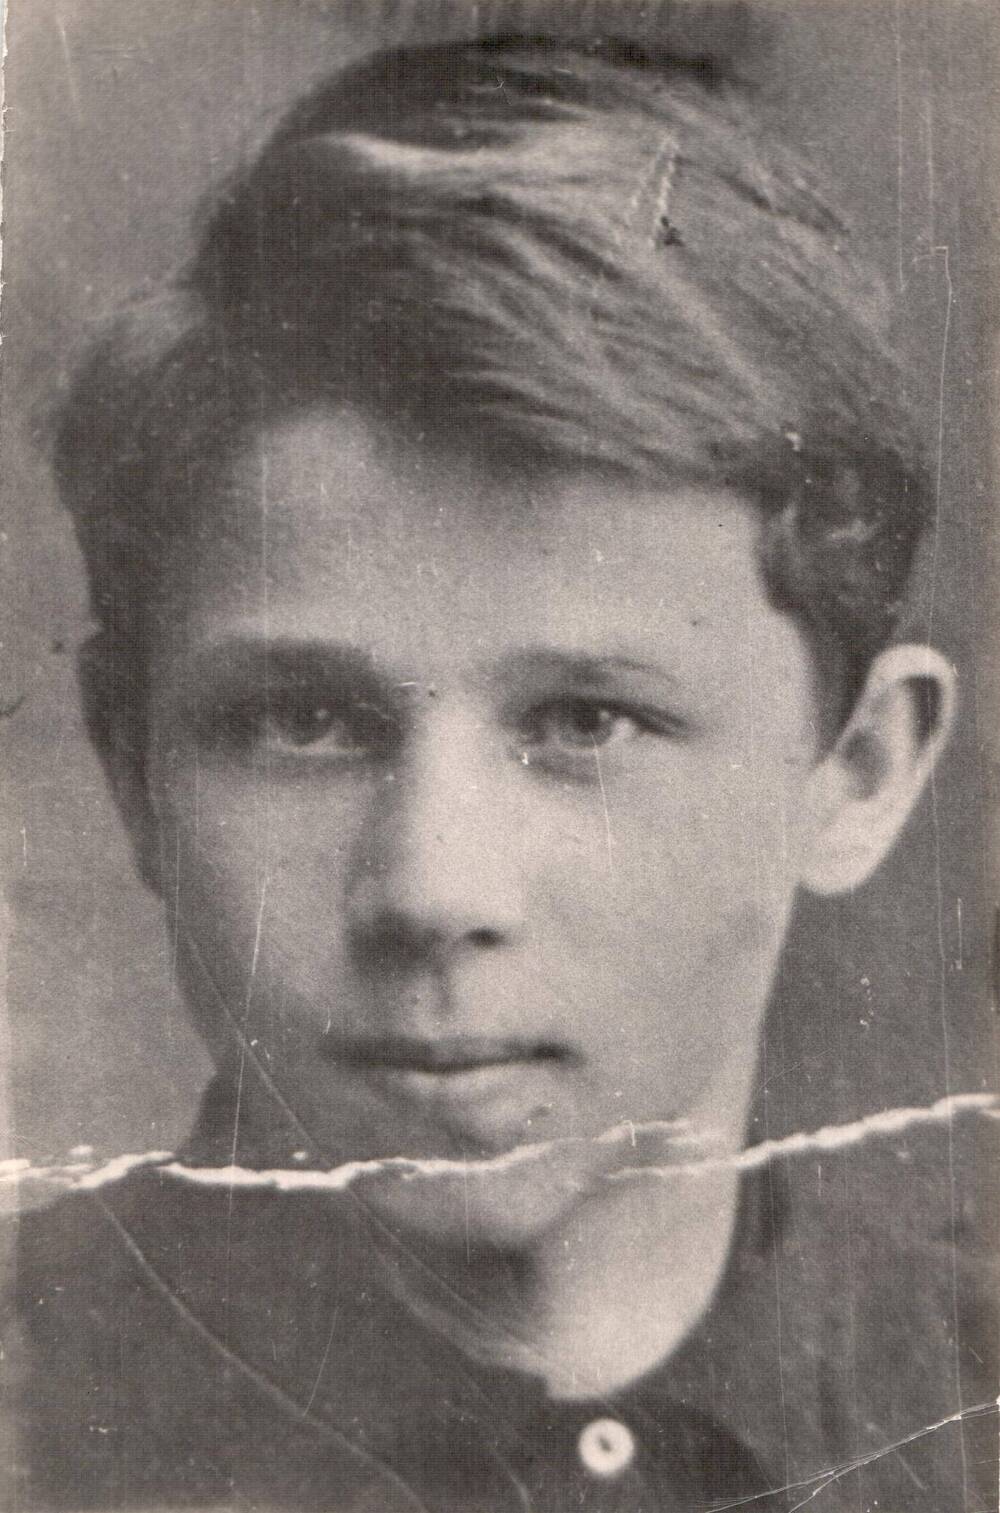 Фотокопия с фото 1931 г. Рябок Владимир Самсонович (1914-1942 гг.), будущий Герой Советского Союза